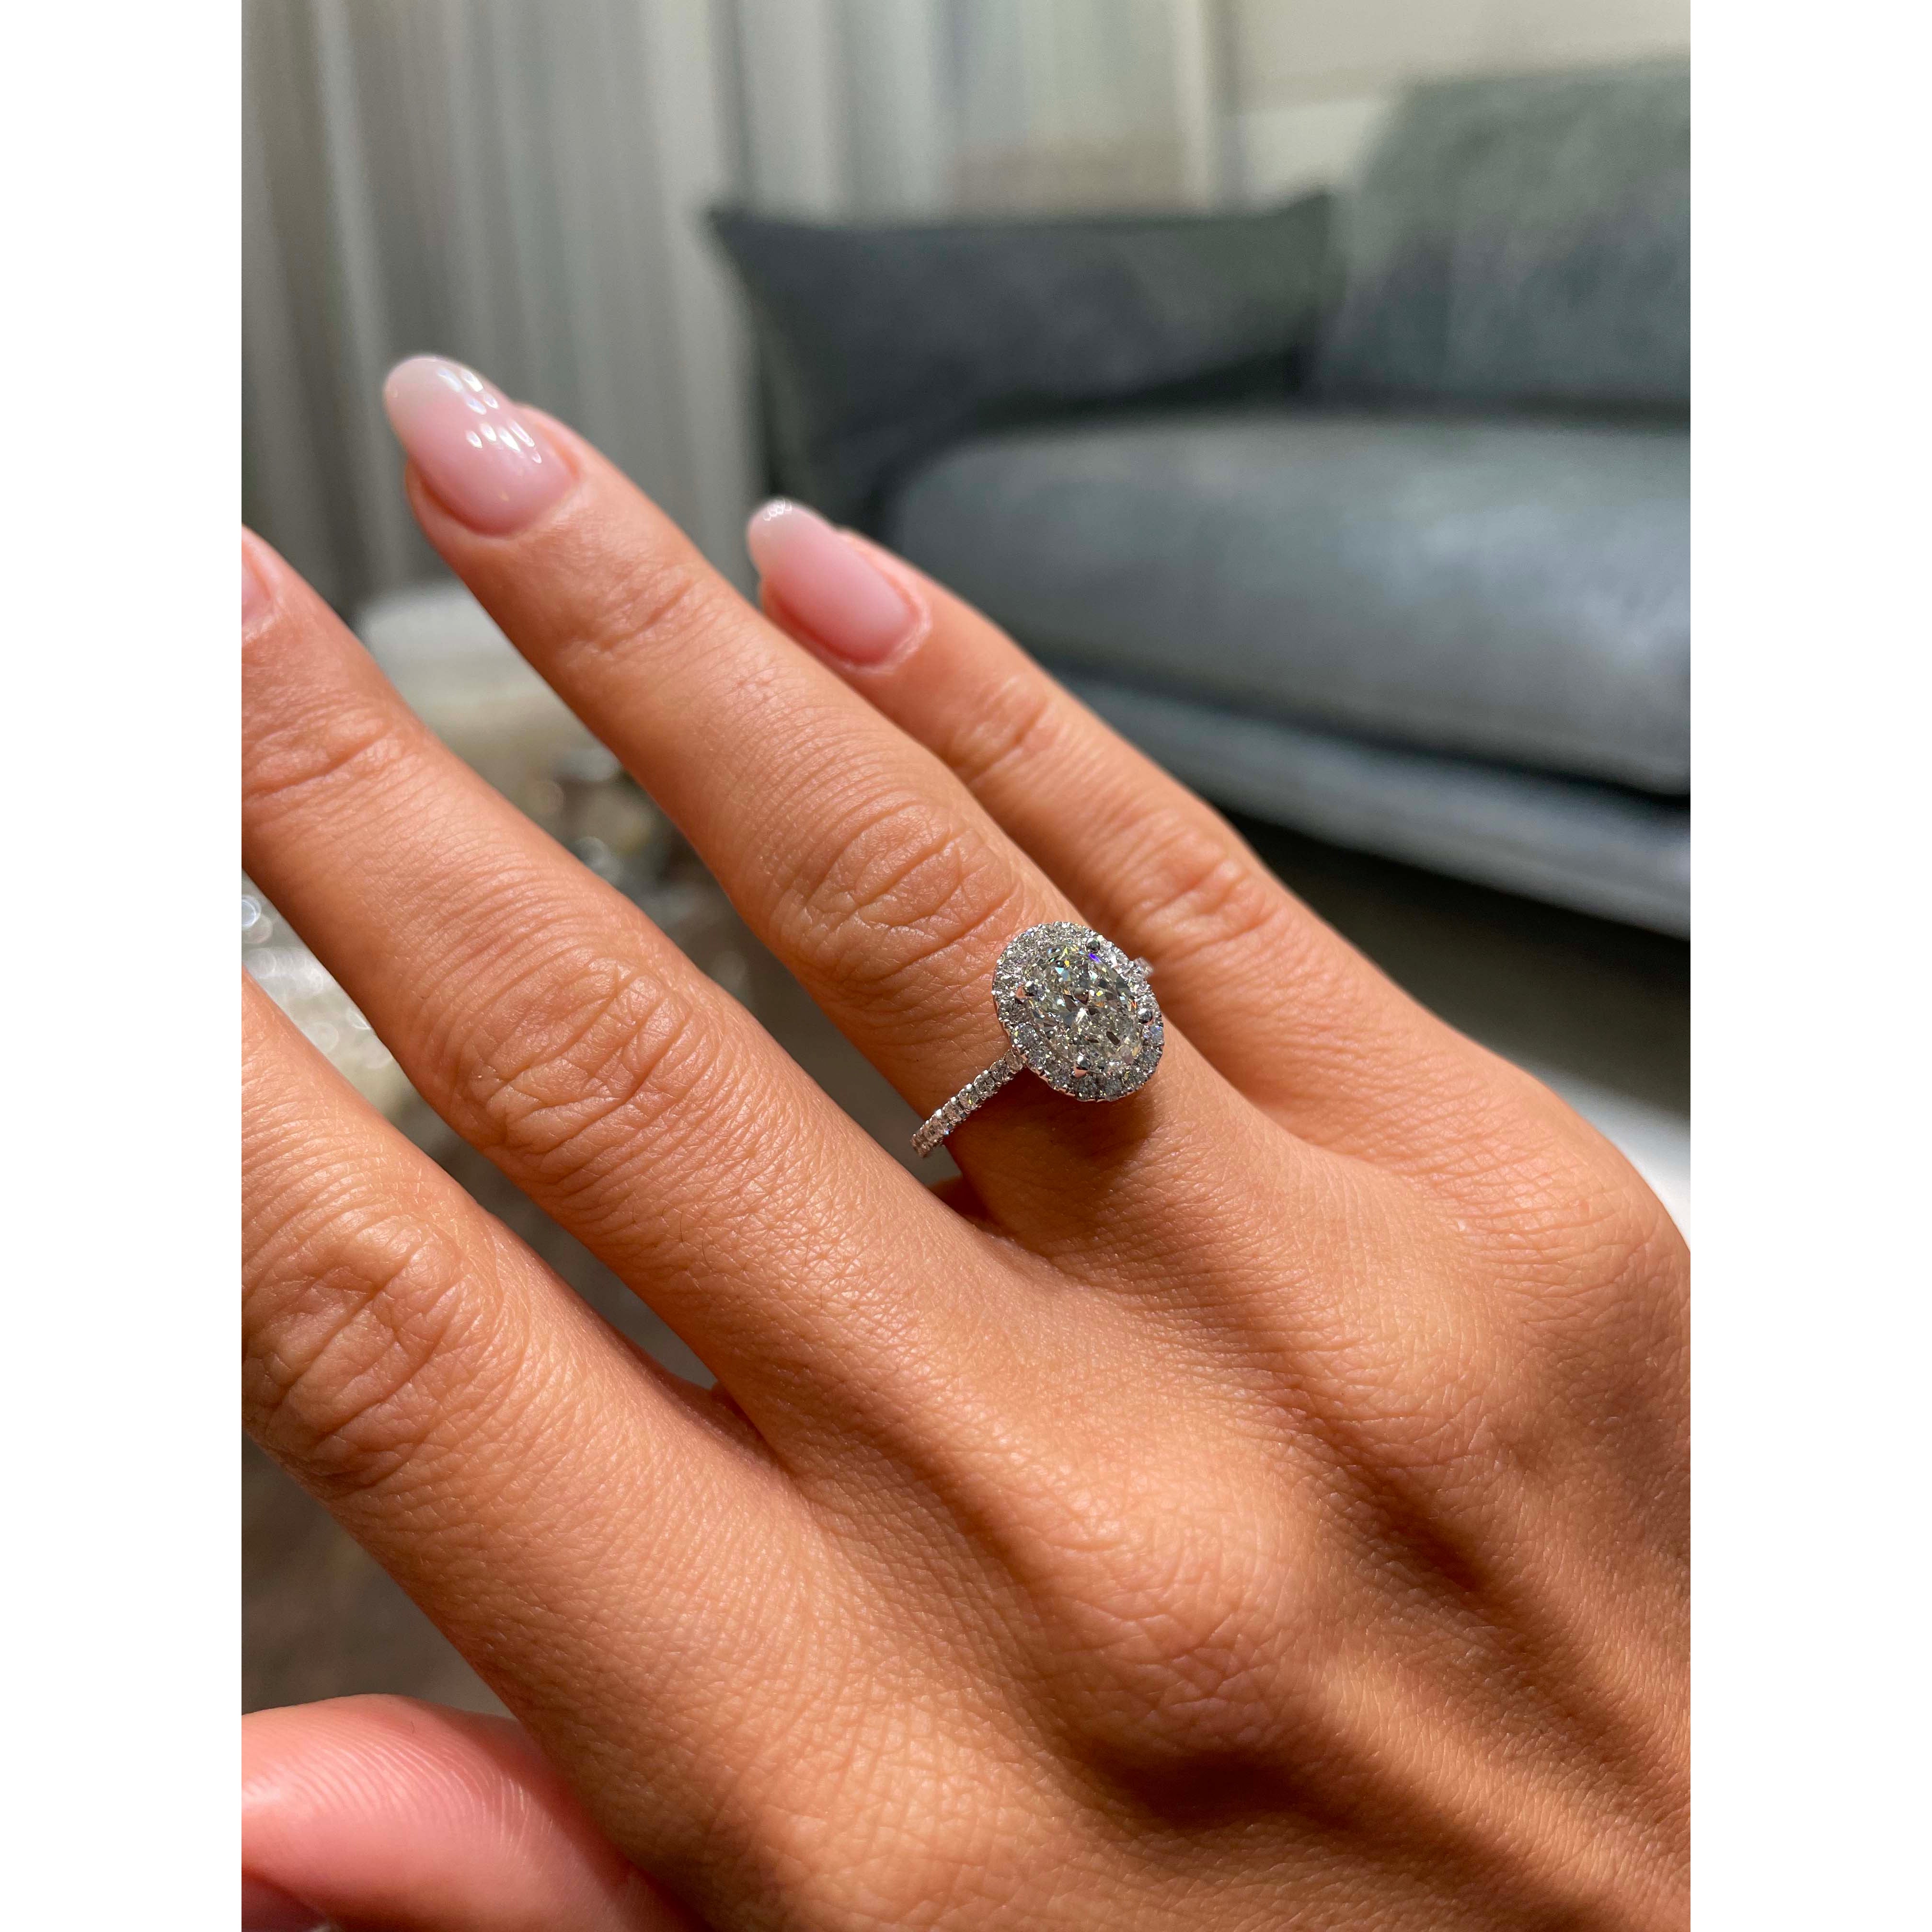 Maria Diamond Engagement Ring   (1.3 Carat) - Platinum